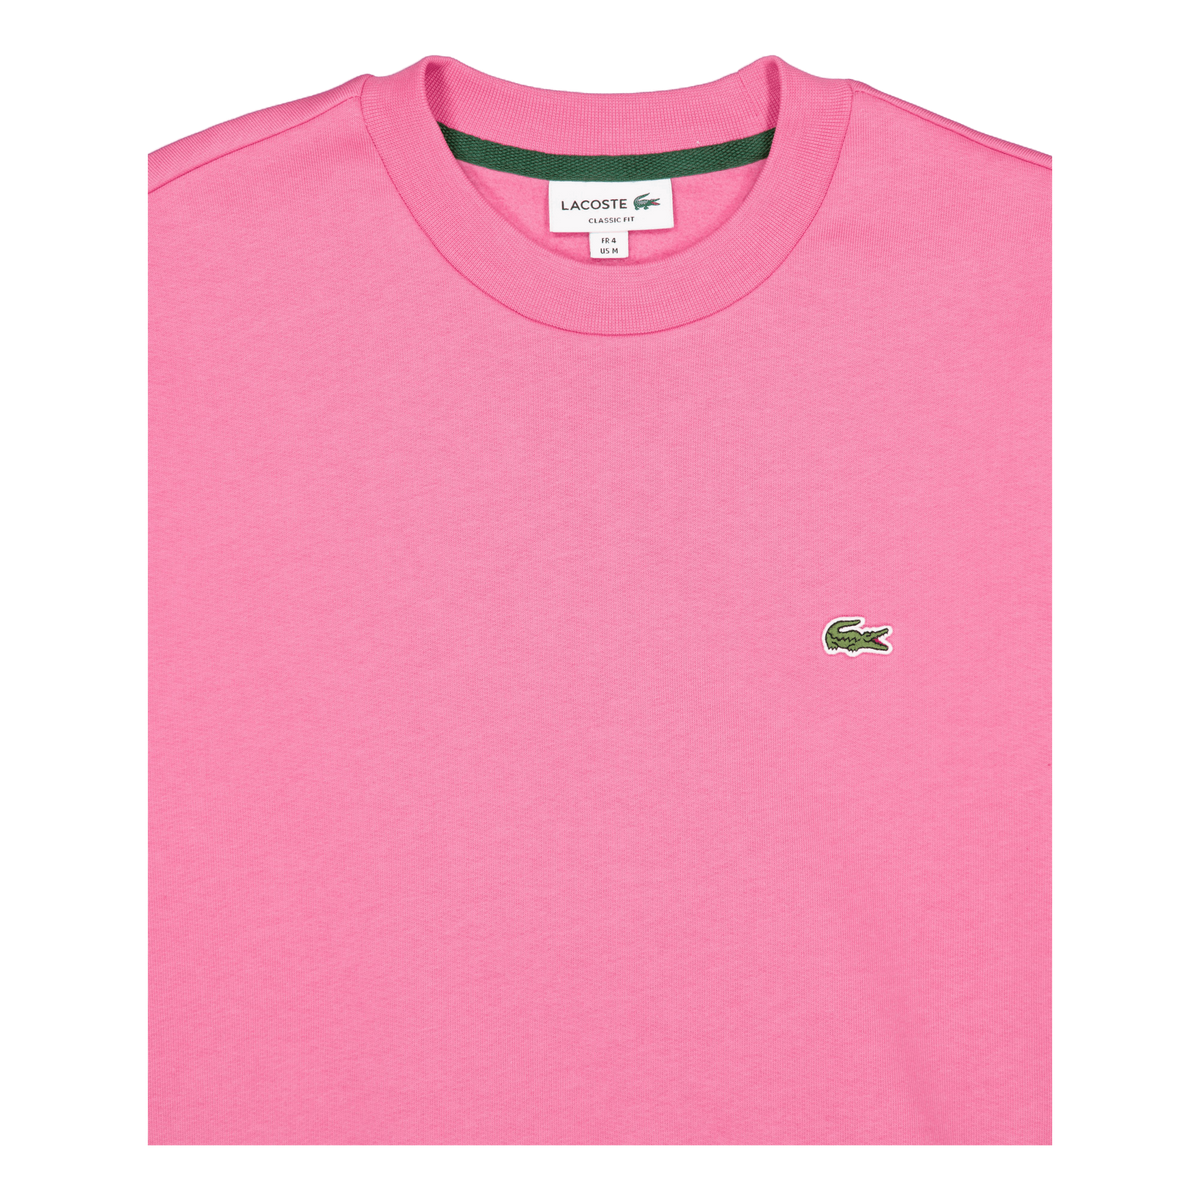 Brushed Fleece Sweatshirt 2r3 Reseda Pink